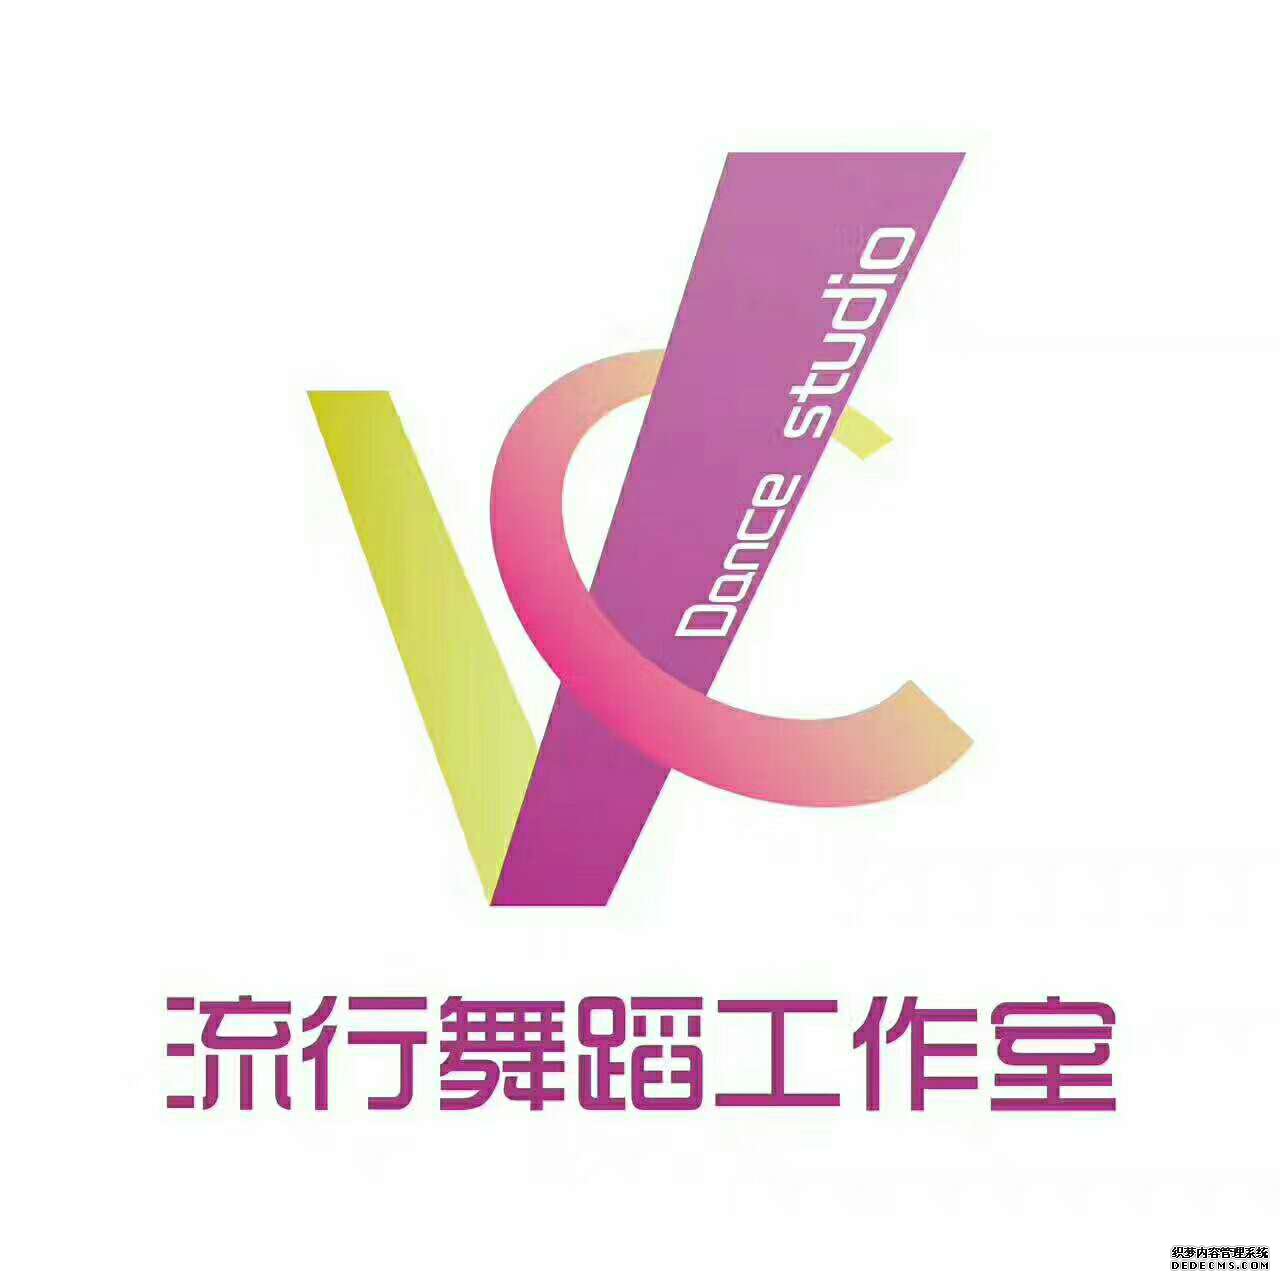 铁岭VC舞室五周年大型店庆公演即将开幕